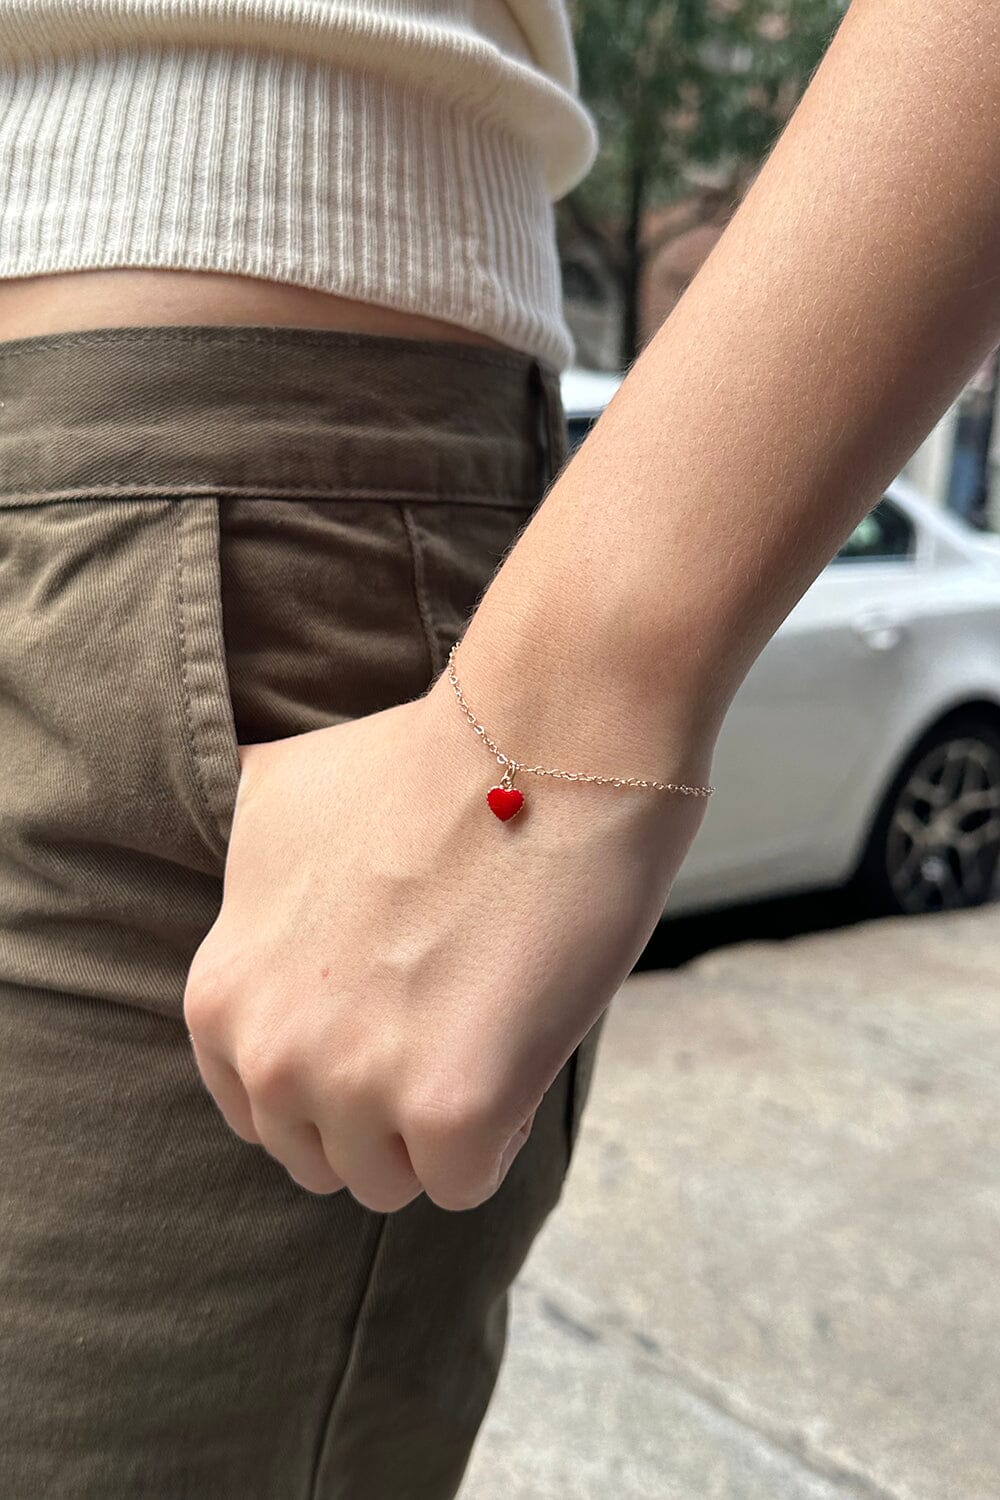 Red Heart Bracelet – Brandy Melville